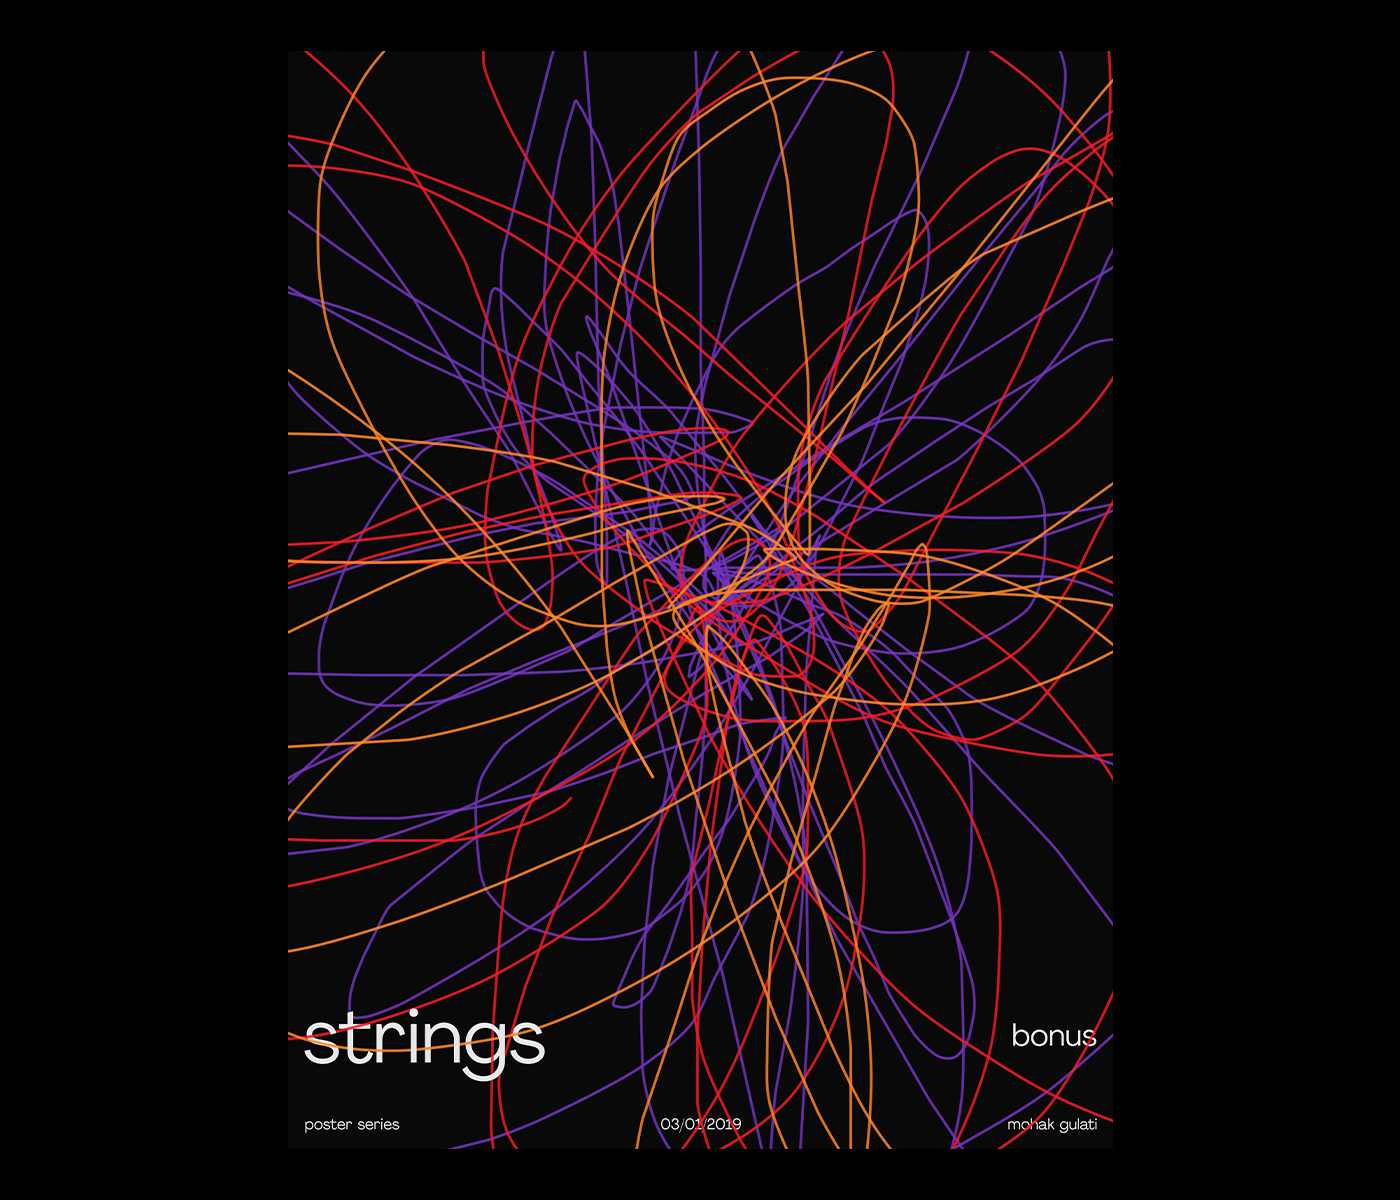 strings poster print Poster Design composition Piet Mondiran de stijl neo-plasticism Poster series